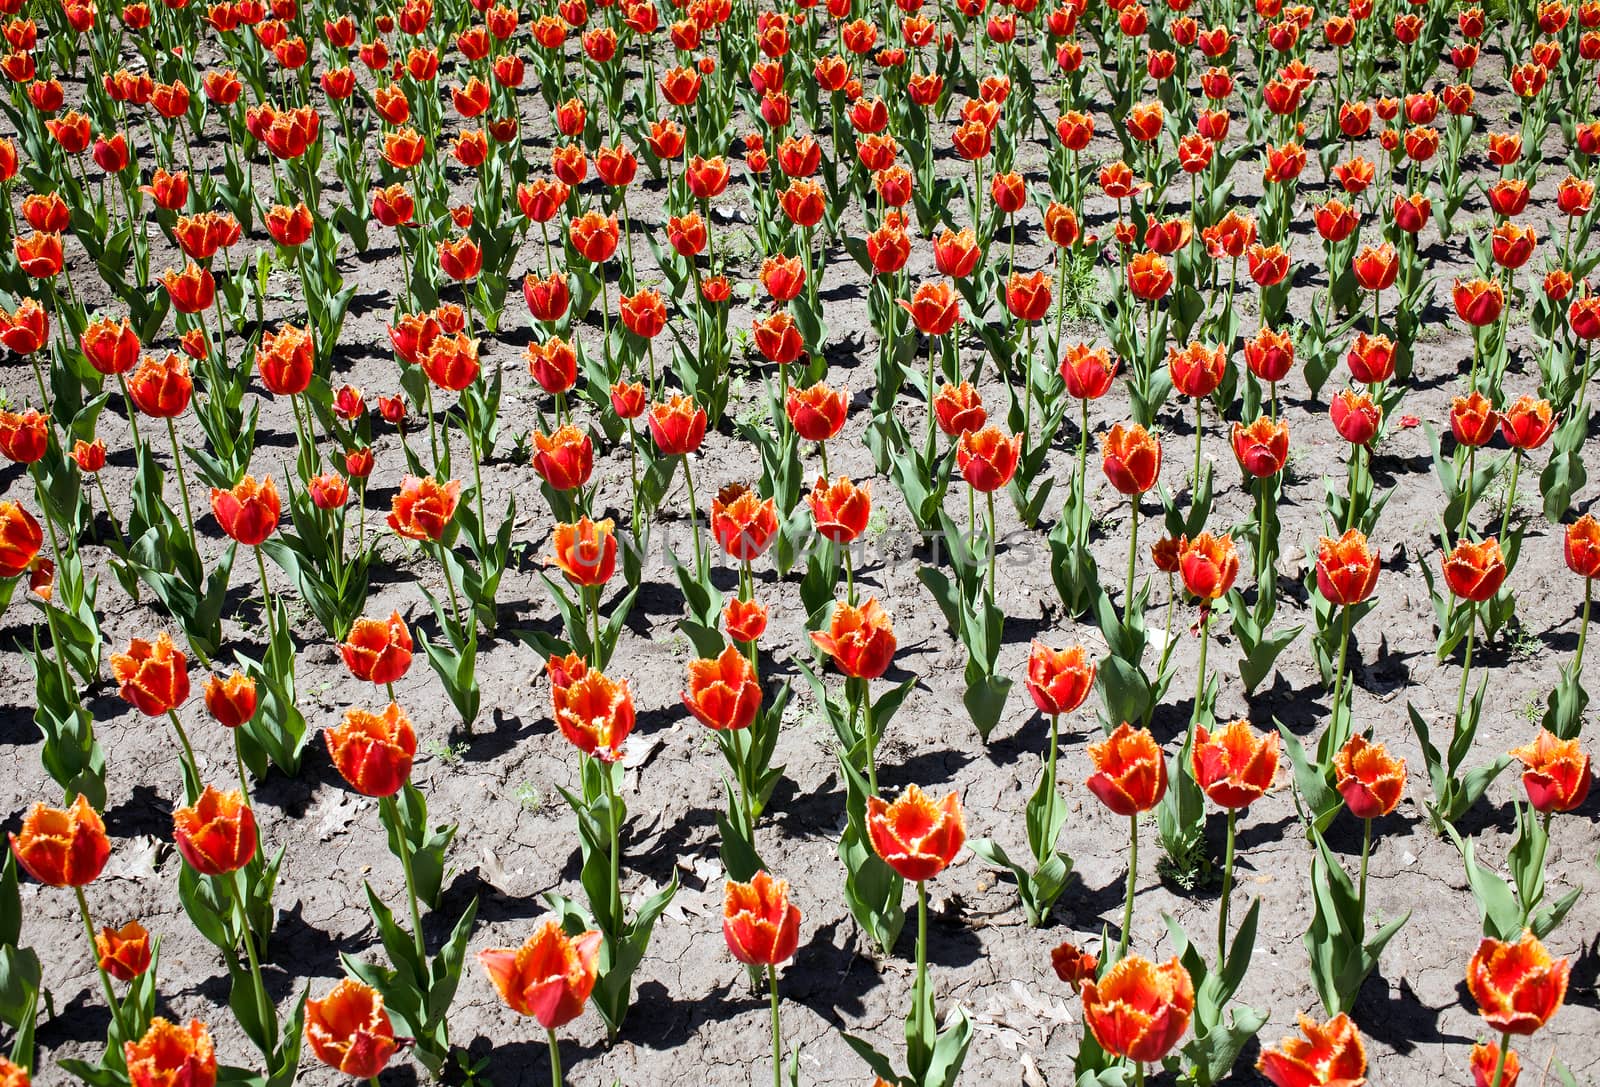 Fringed tulips by Krakatuk